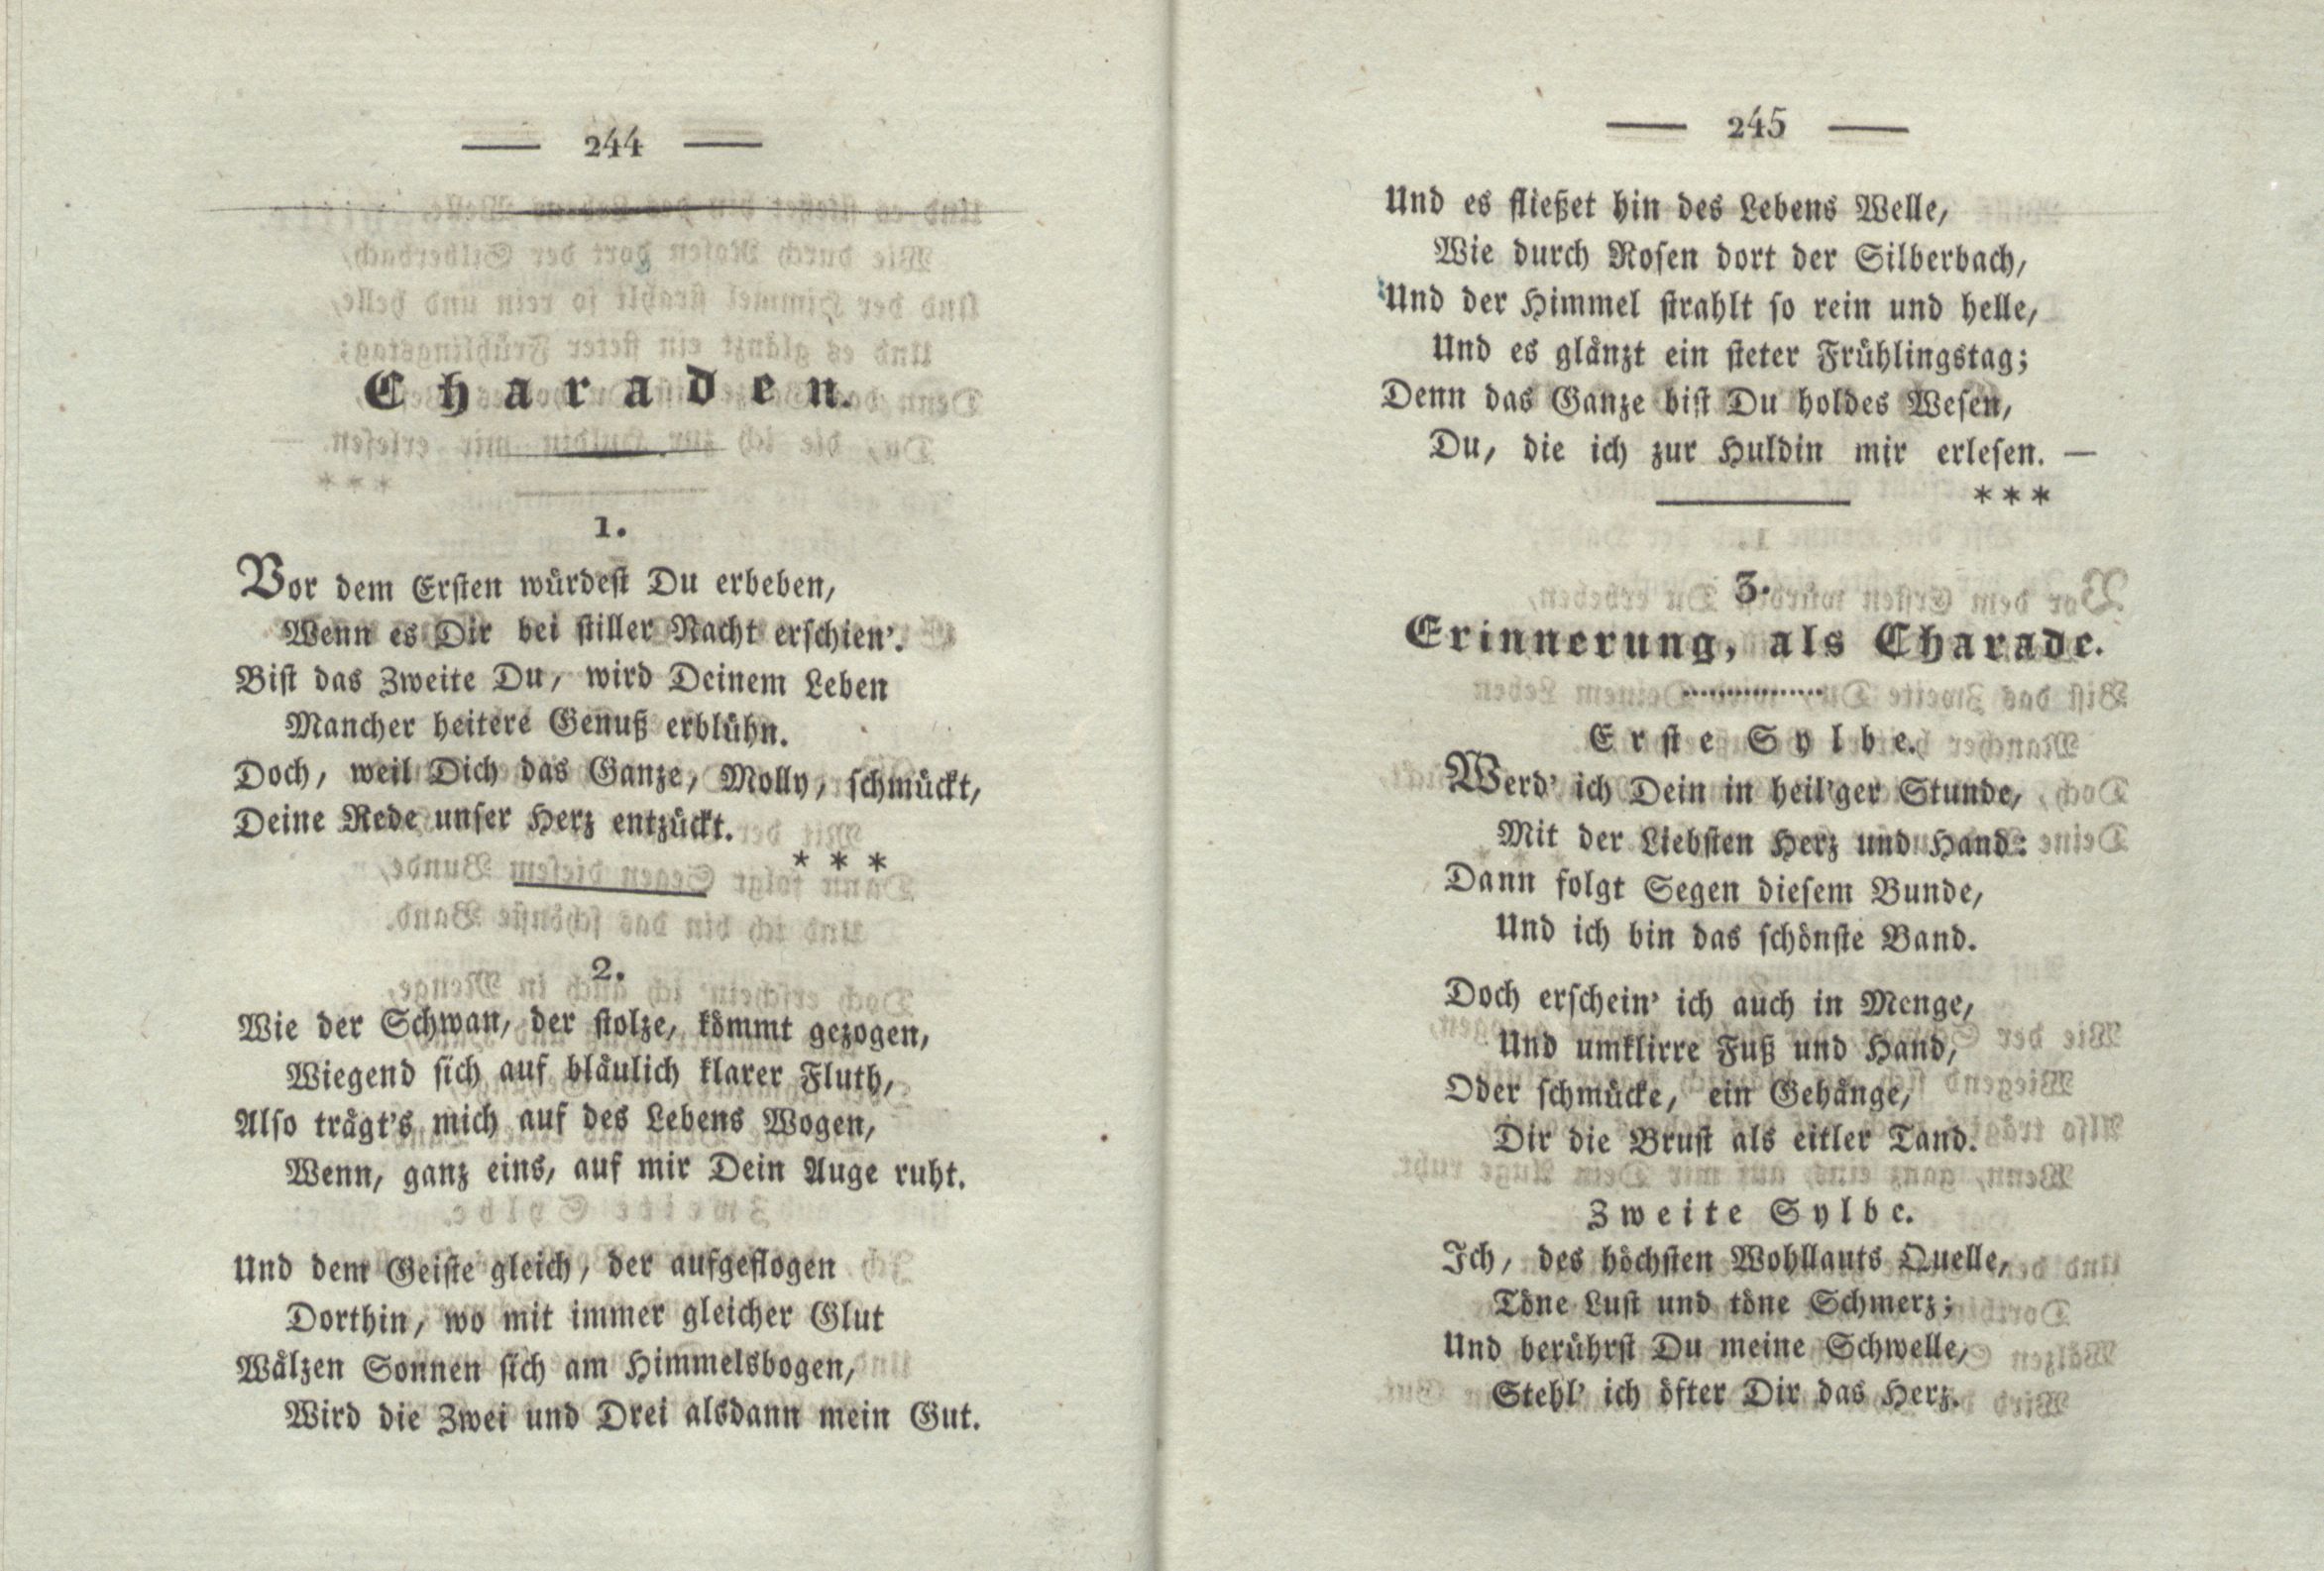 Erinnerung, als Charade (1825) | 1. (244-245) Основной текст